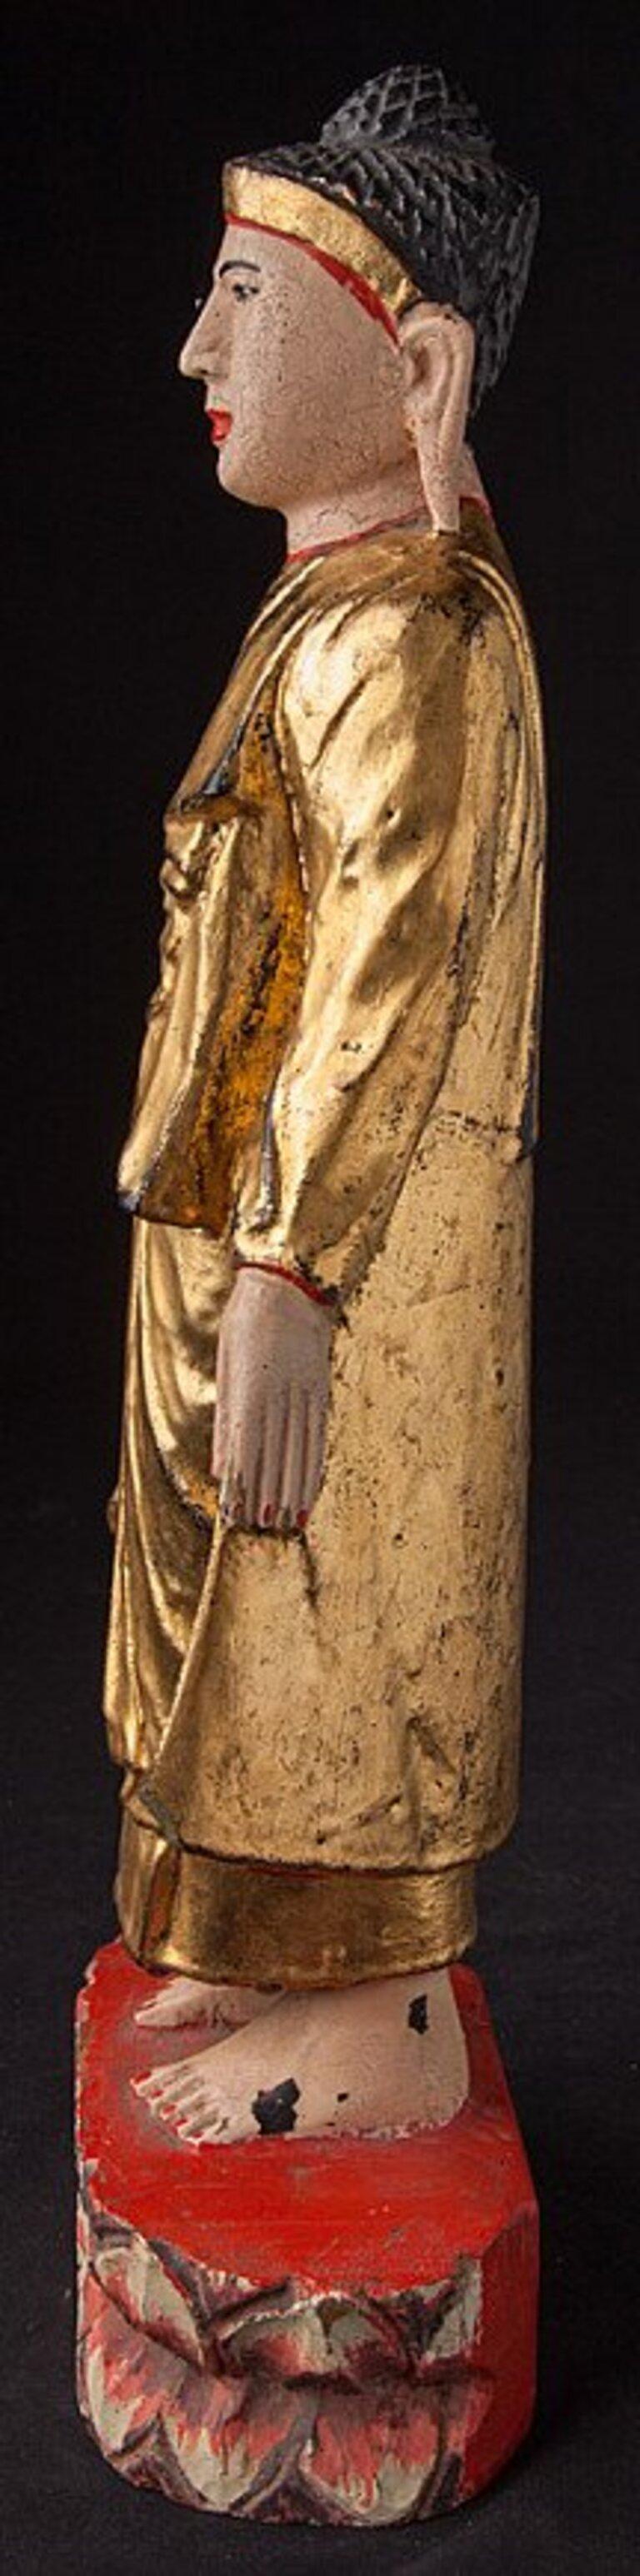 Diese antike hölzerne Buddha-Statue ist ein wirklich einzigartiges und besonderes Sammlerstück. Sie ist 43 cm hoch, 15 cm breit und 8,5 cm tief, besteht aus Holz und ist mit 24-karätigem Gold vergoldet. Die komplizierten Details der Statue tragen zu